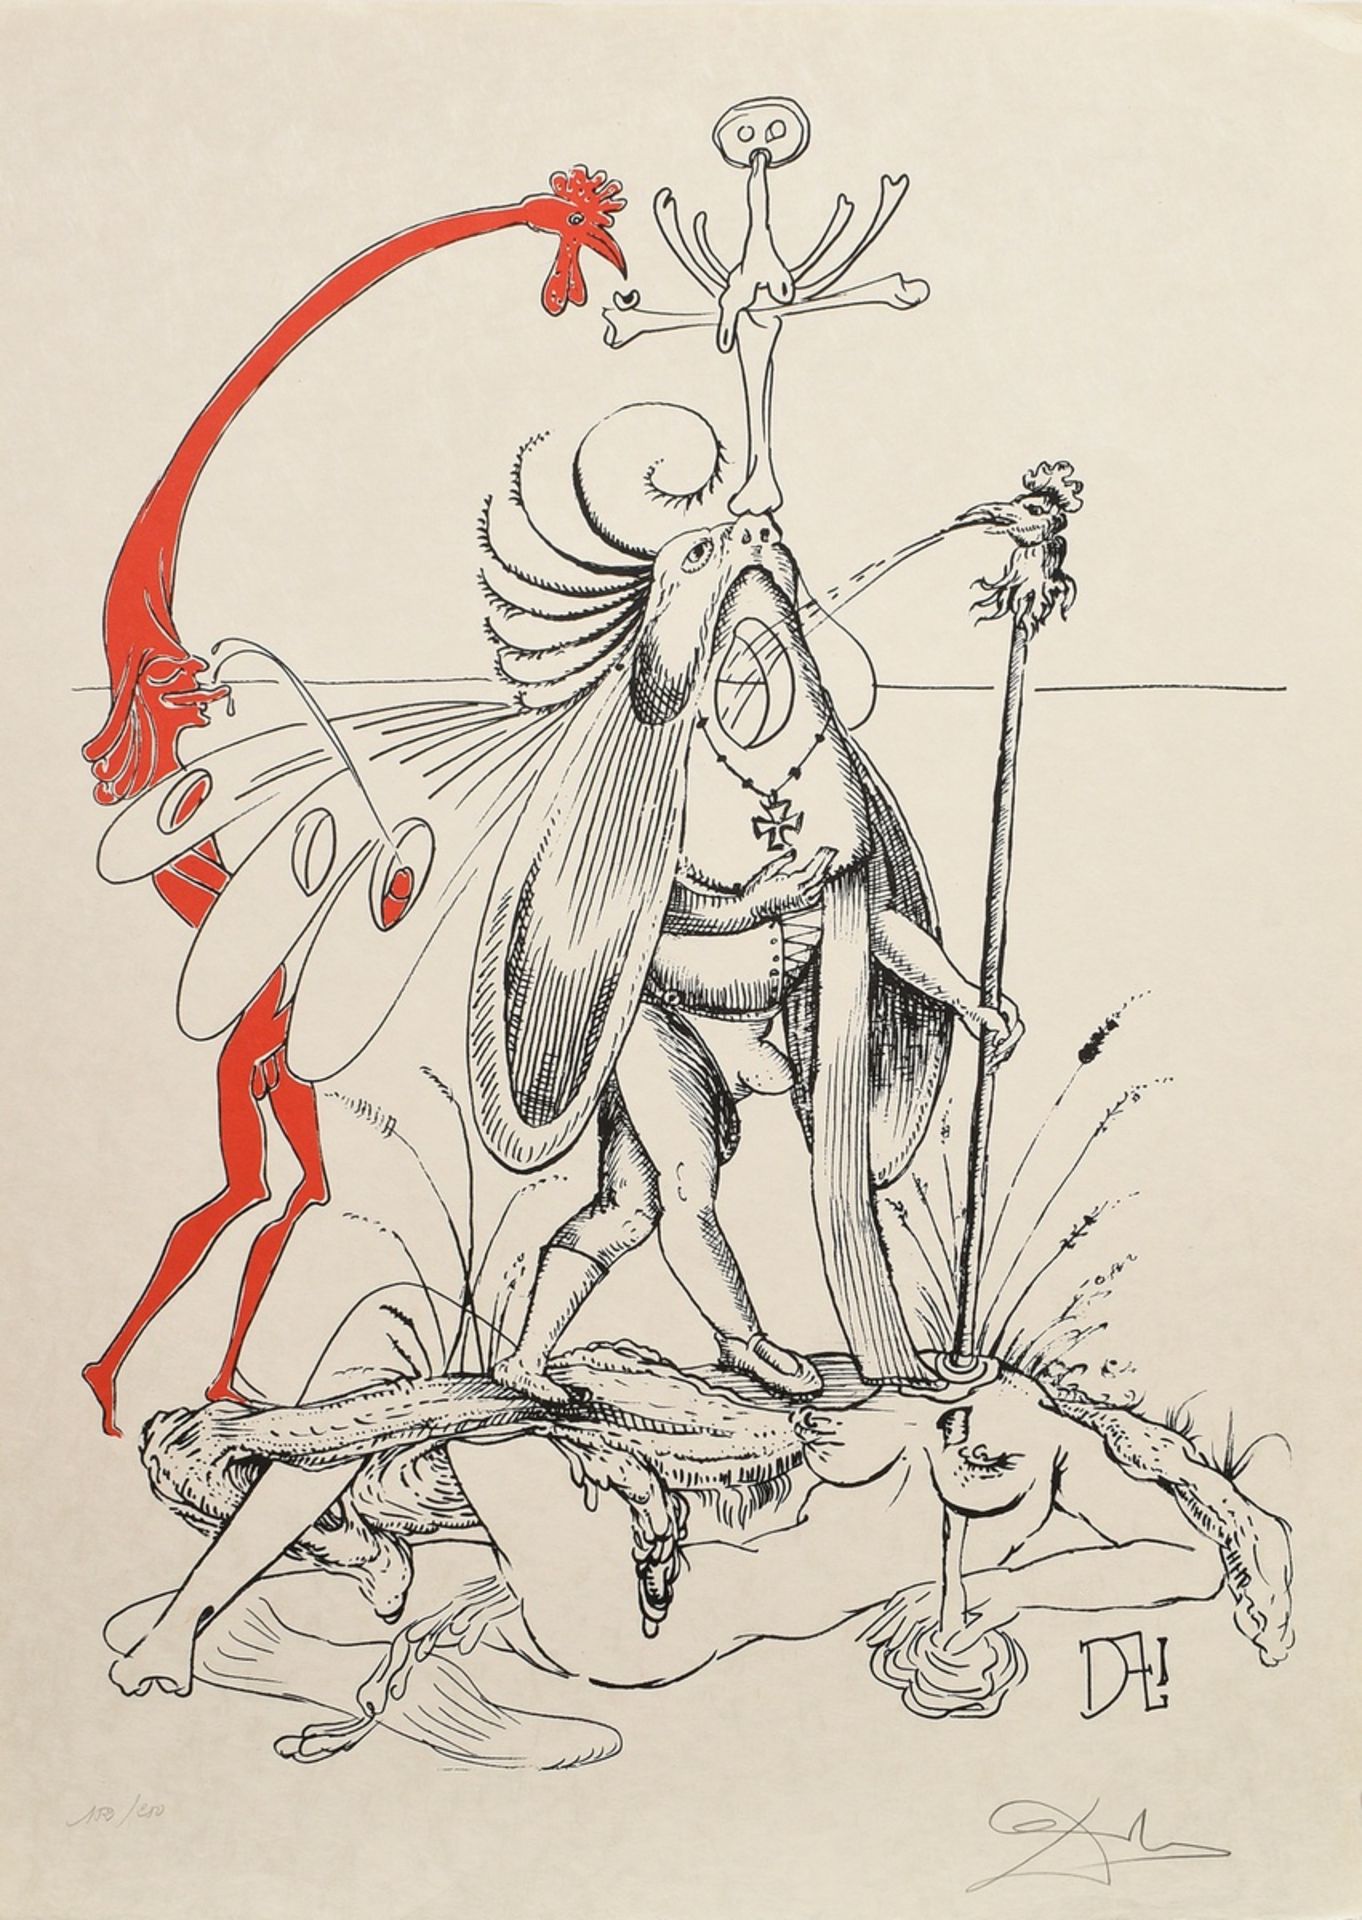 Dalí, Salvador (1904-1989) "Les songes drolatiques de Pantagruel”, 152/250, 25 (Farb-)Lithographien - Bild 3 aus 27